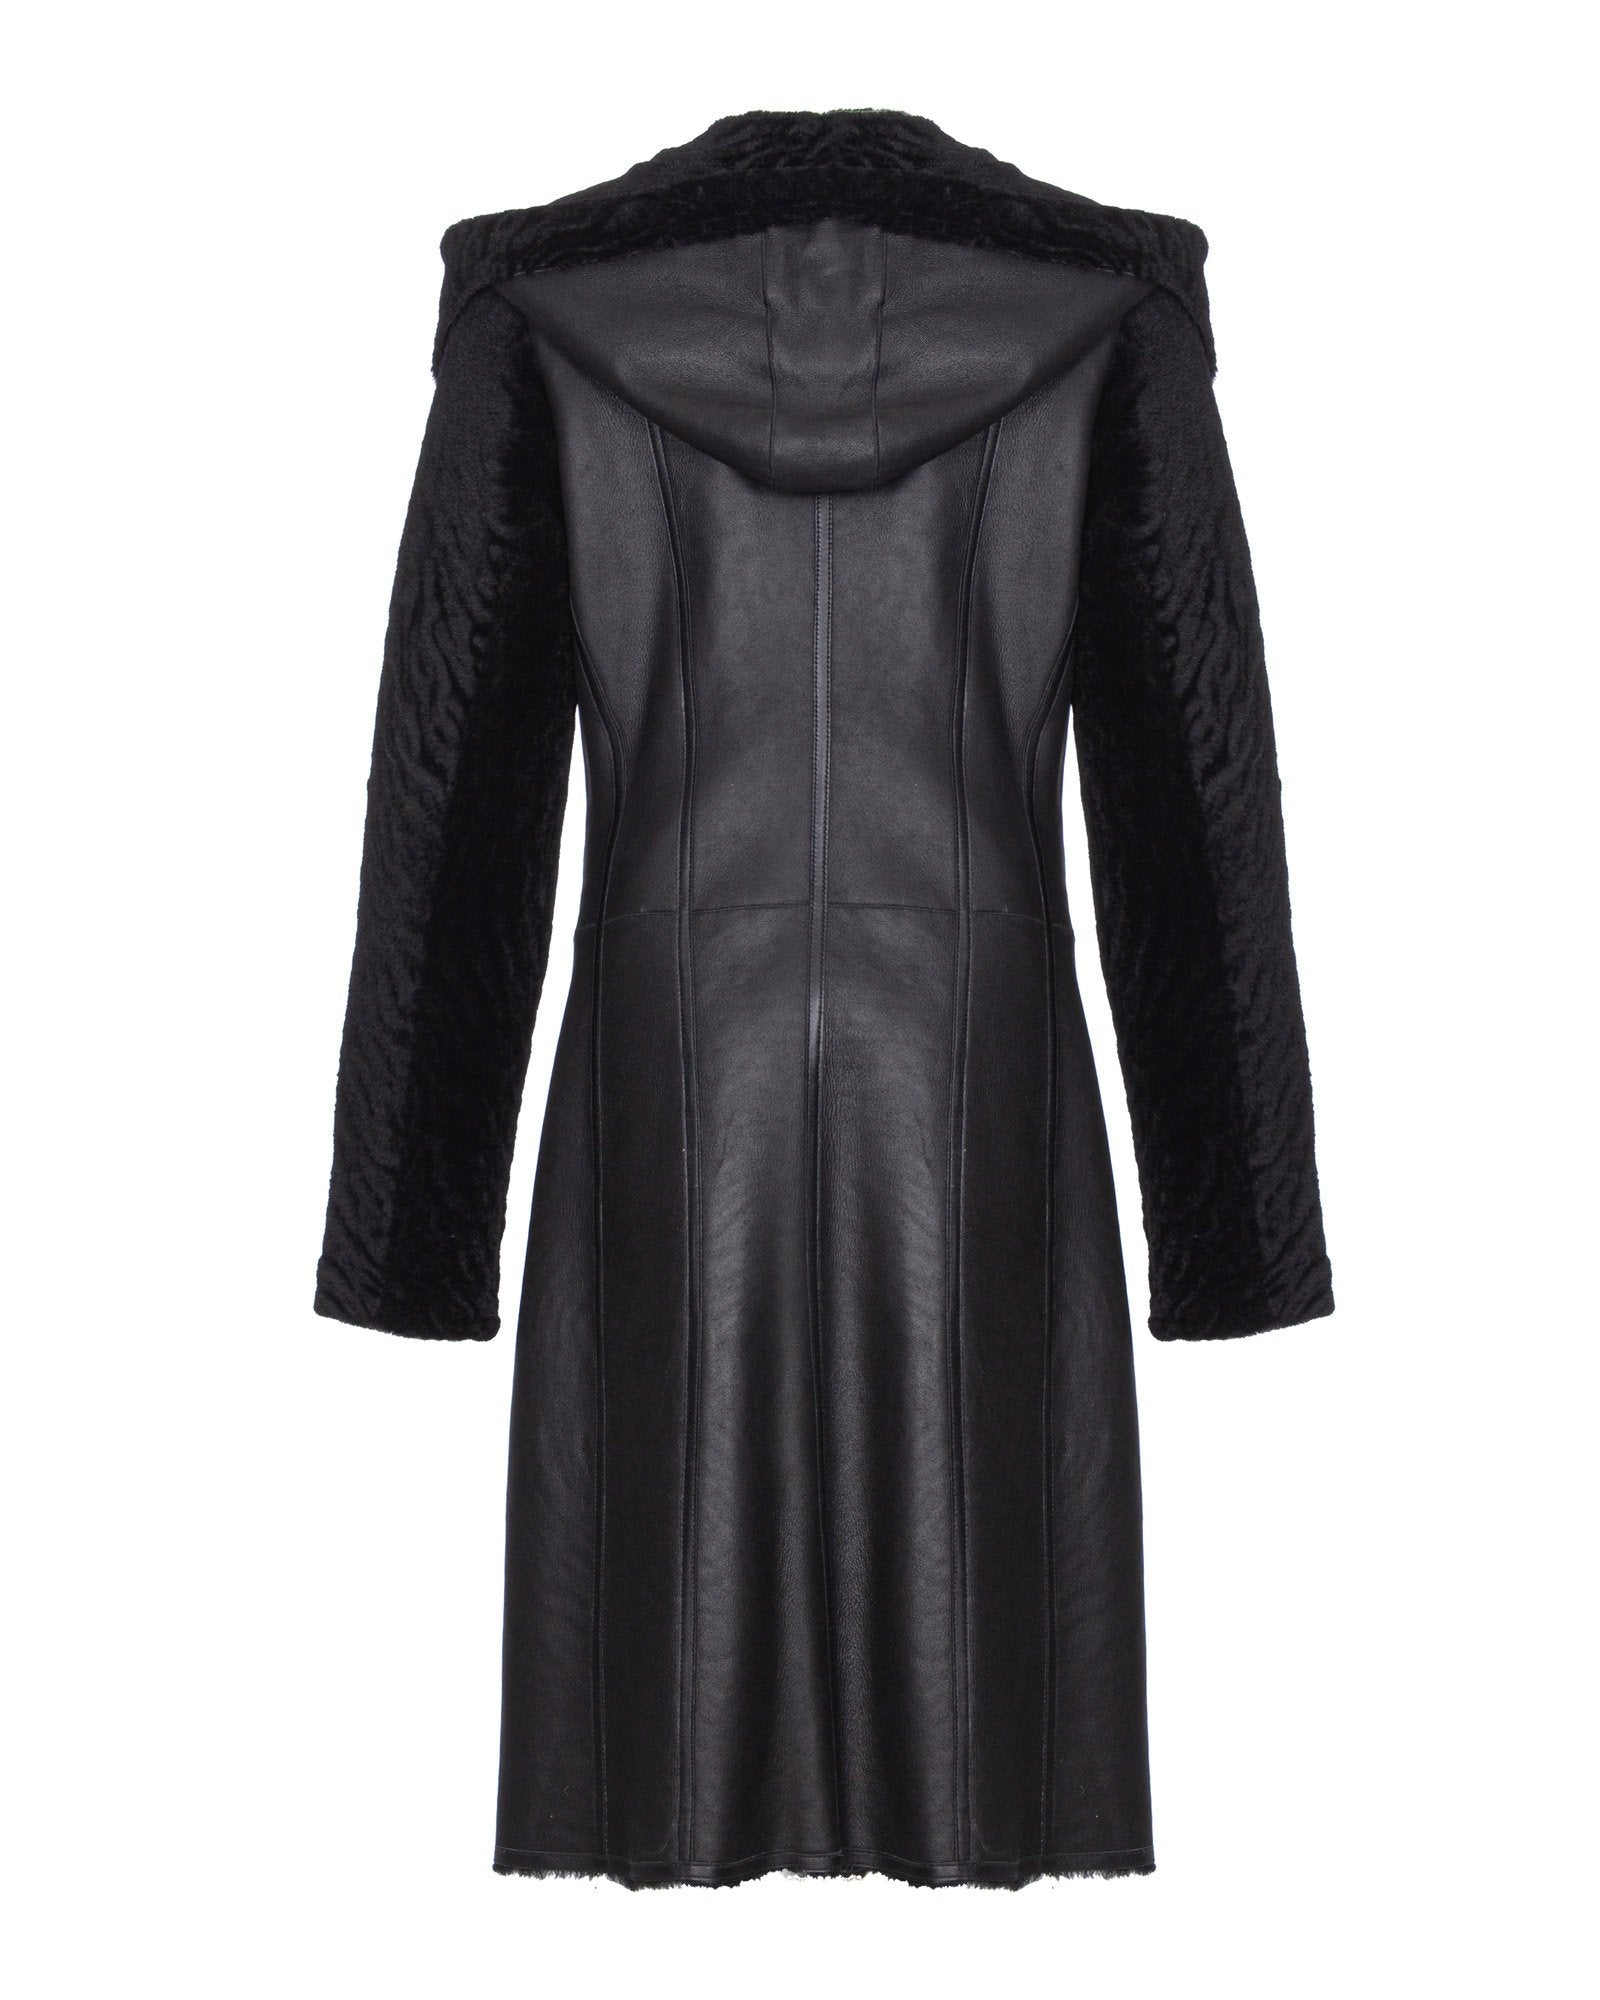 Black Long Shearling Coat